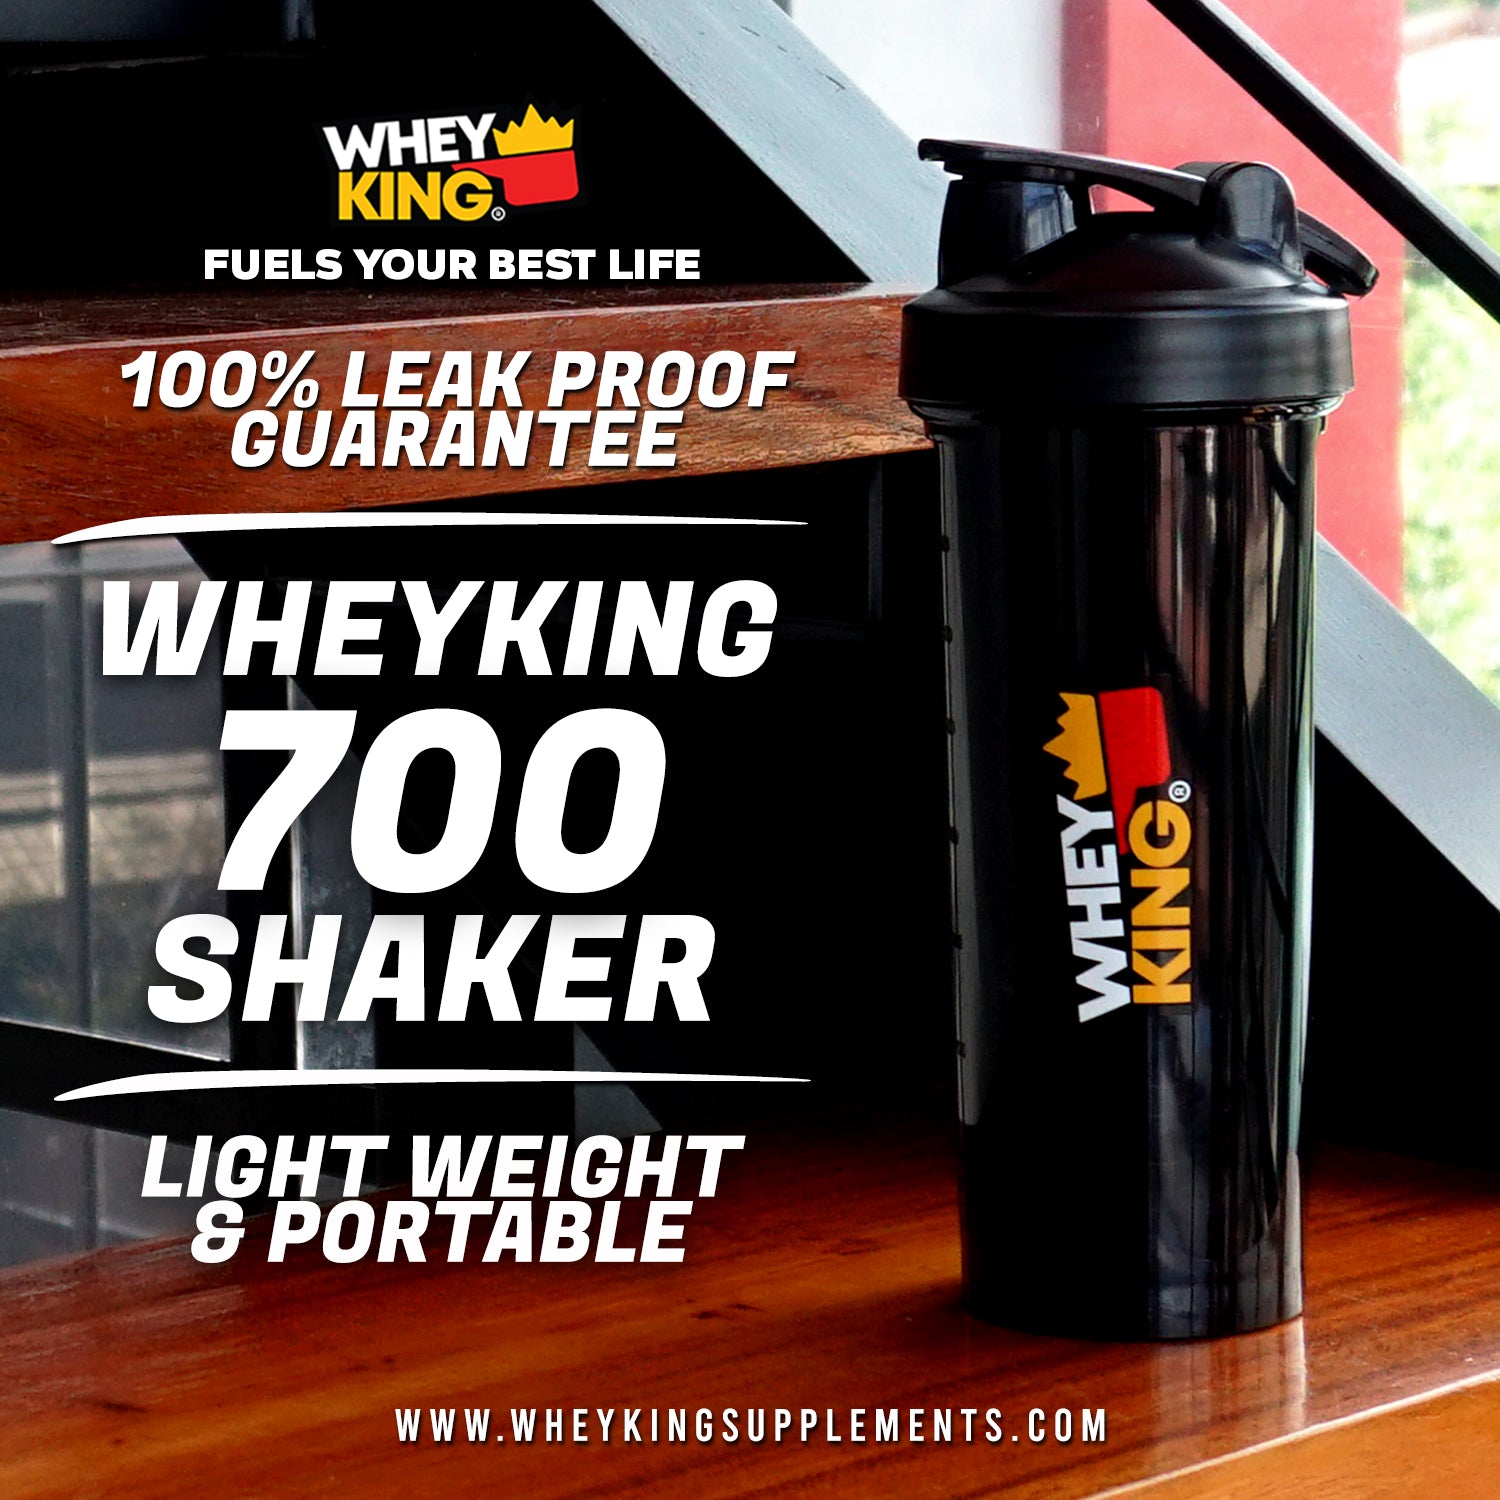 Whey King Leak proof 700 Shaker - light weight & portable bottle